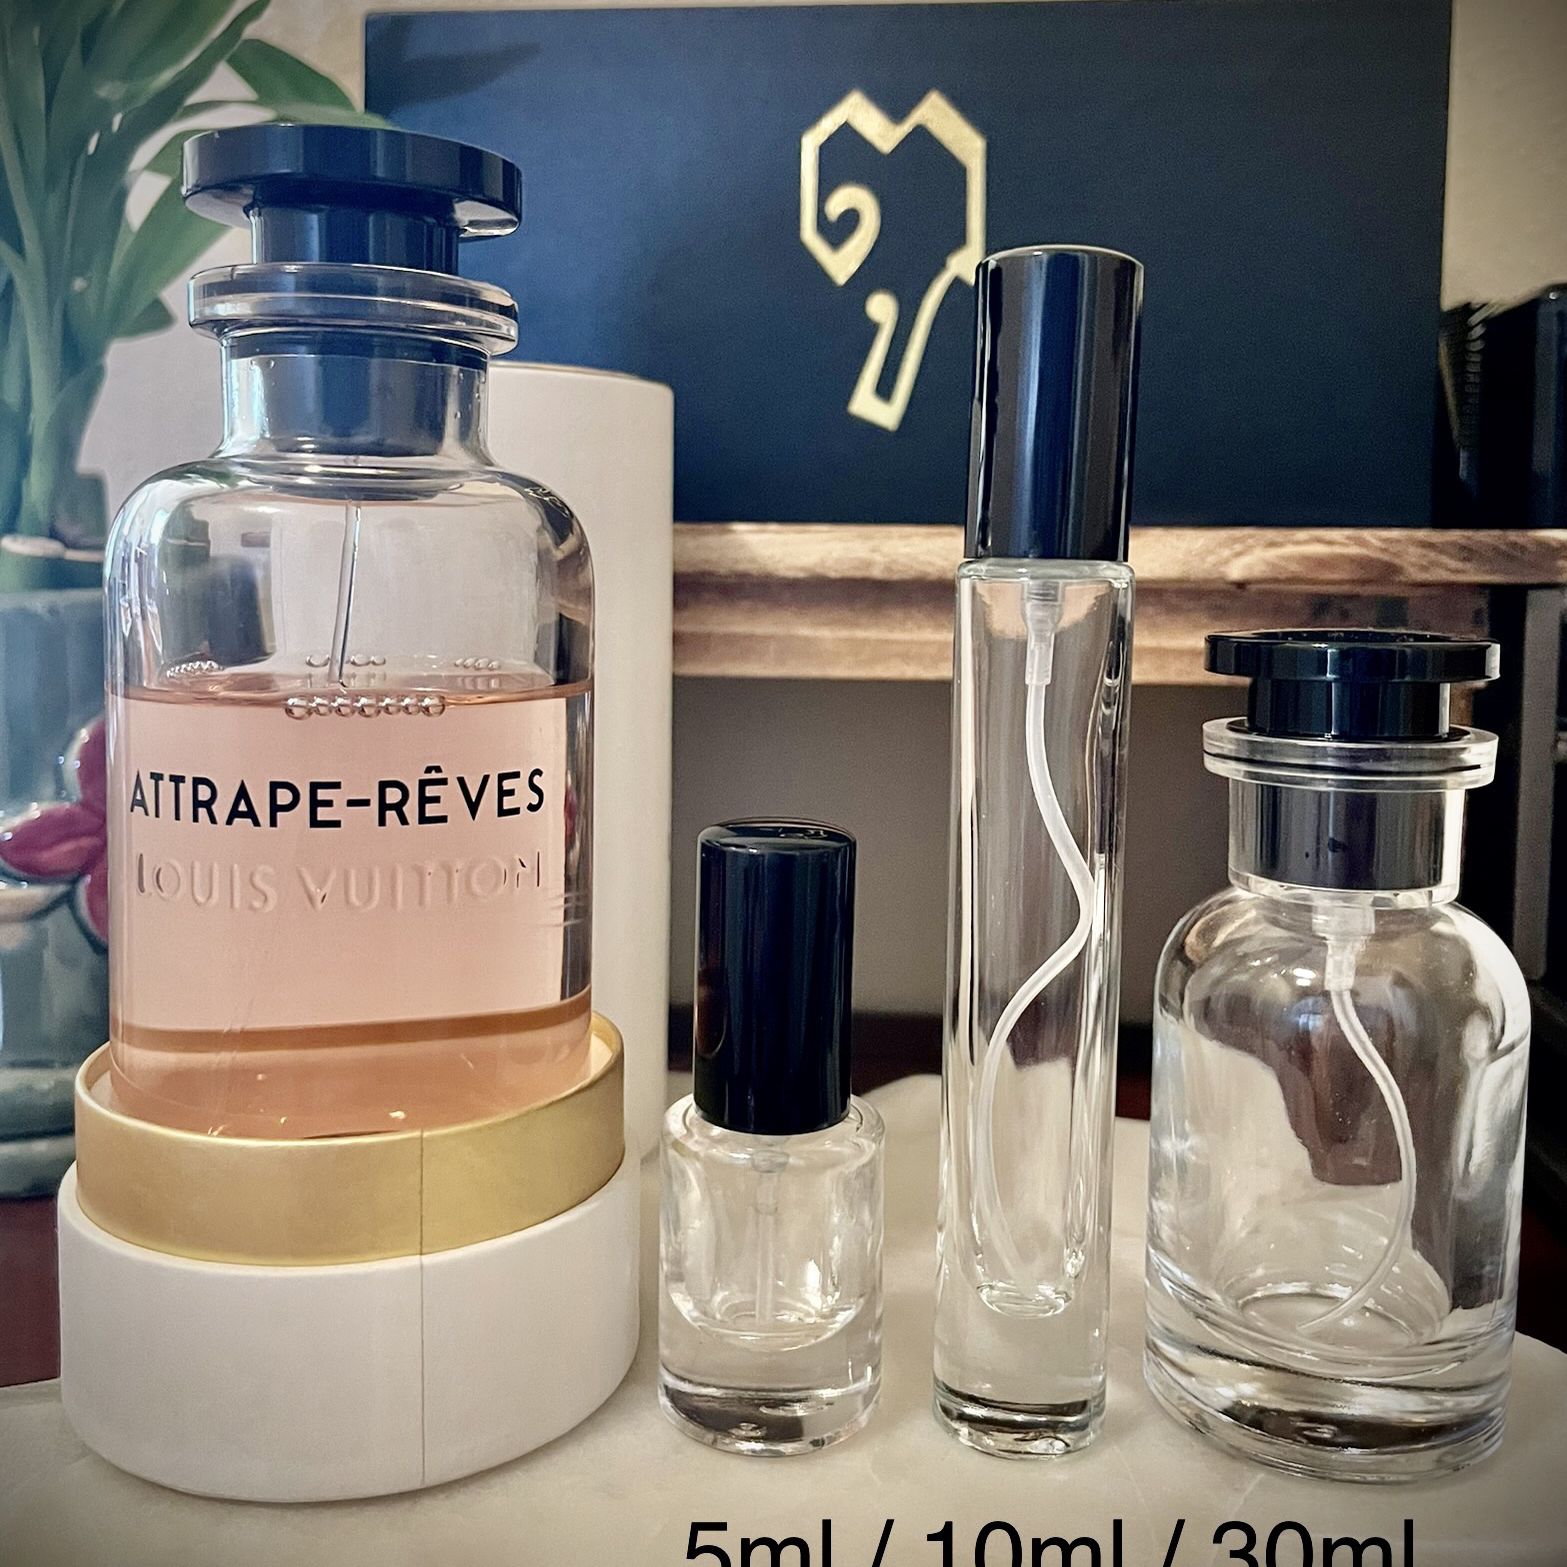 Louis Vuitton Attrape Reves 10 Ml Eau de Parfum Perfume Travel Mini Bottle, - Louis Vuitton perfume,cologne,fragrance,parfum